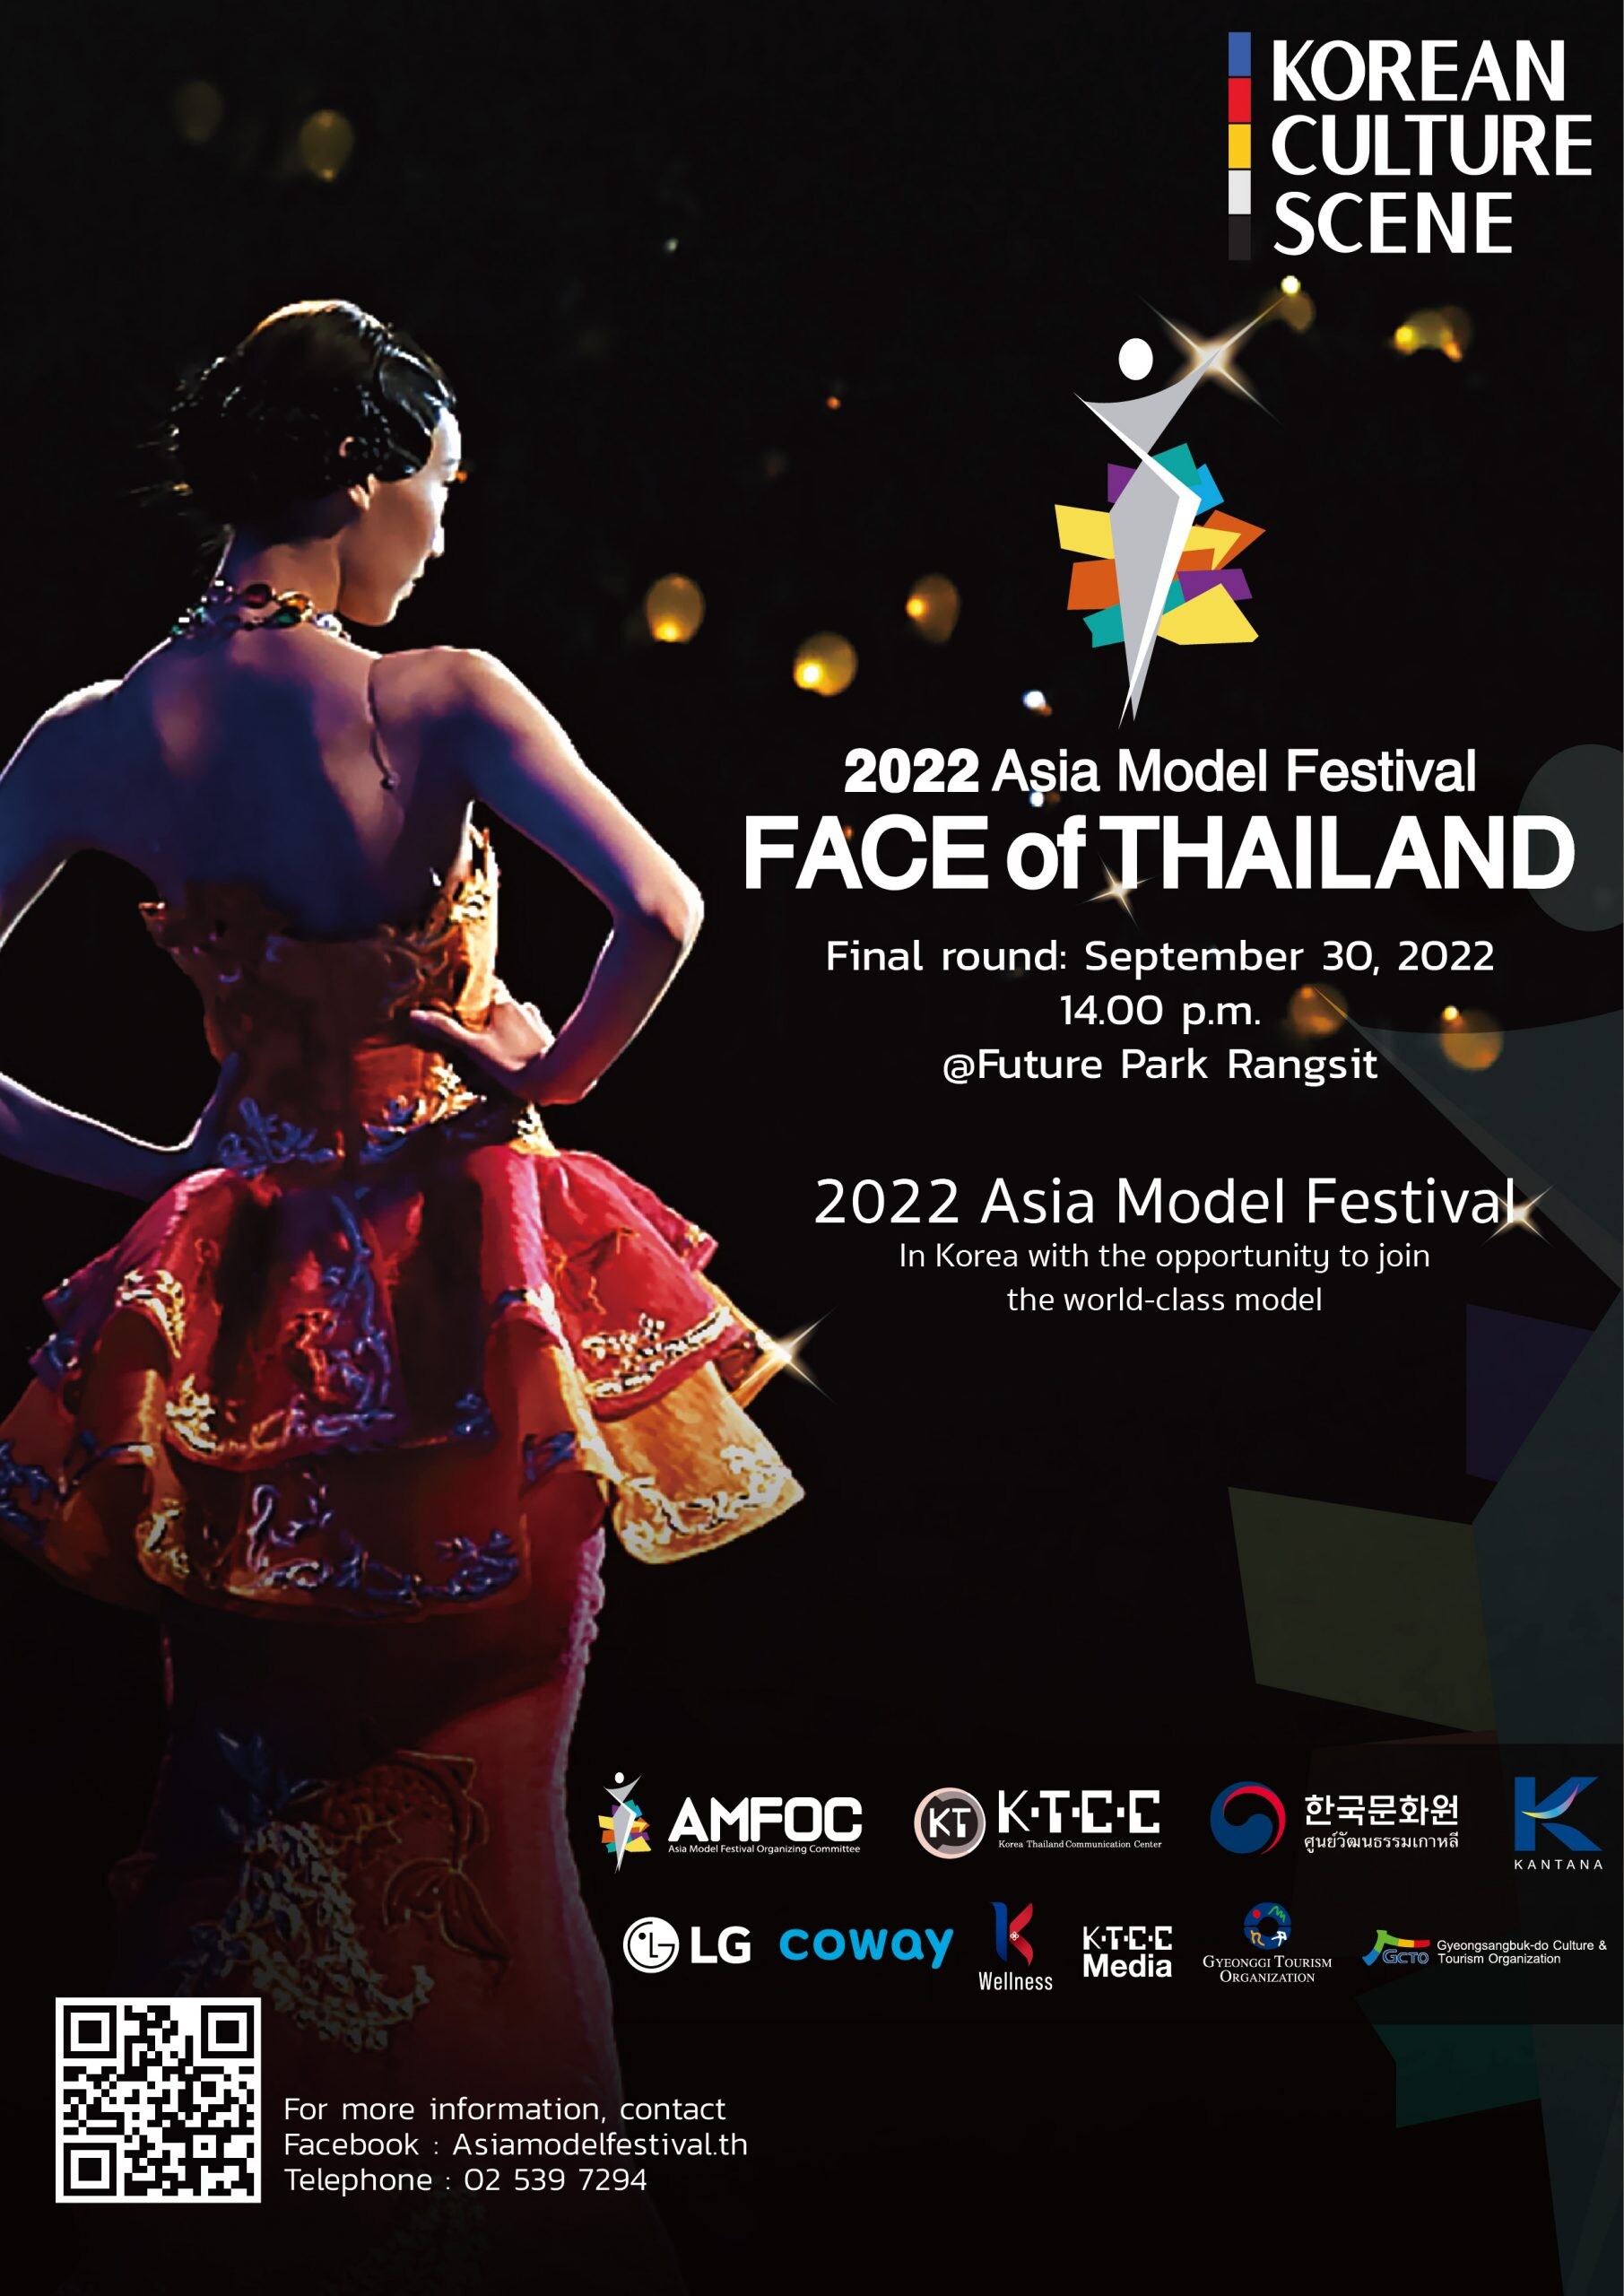 เตรียมพบกับการประกวดรอบชิงชนะเลิศ เพื่อเฟ้นหาสุดยอดนางแบบที่ยอดเยี่ยมที่สุดในเอเชีย 2022 Asia Model Festival FACE OF THAILAND